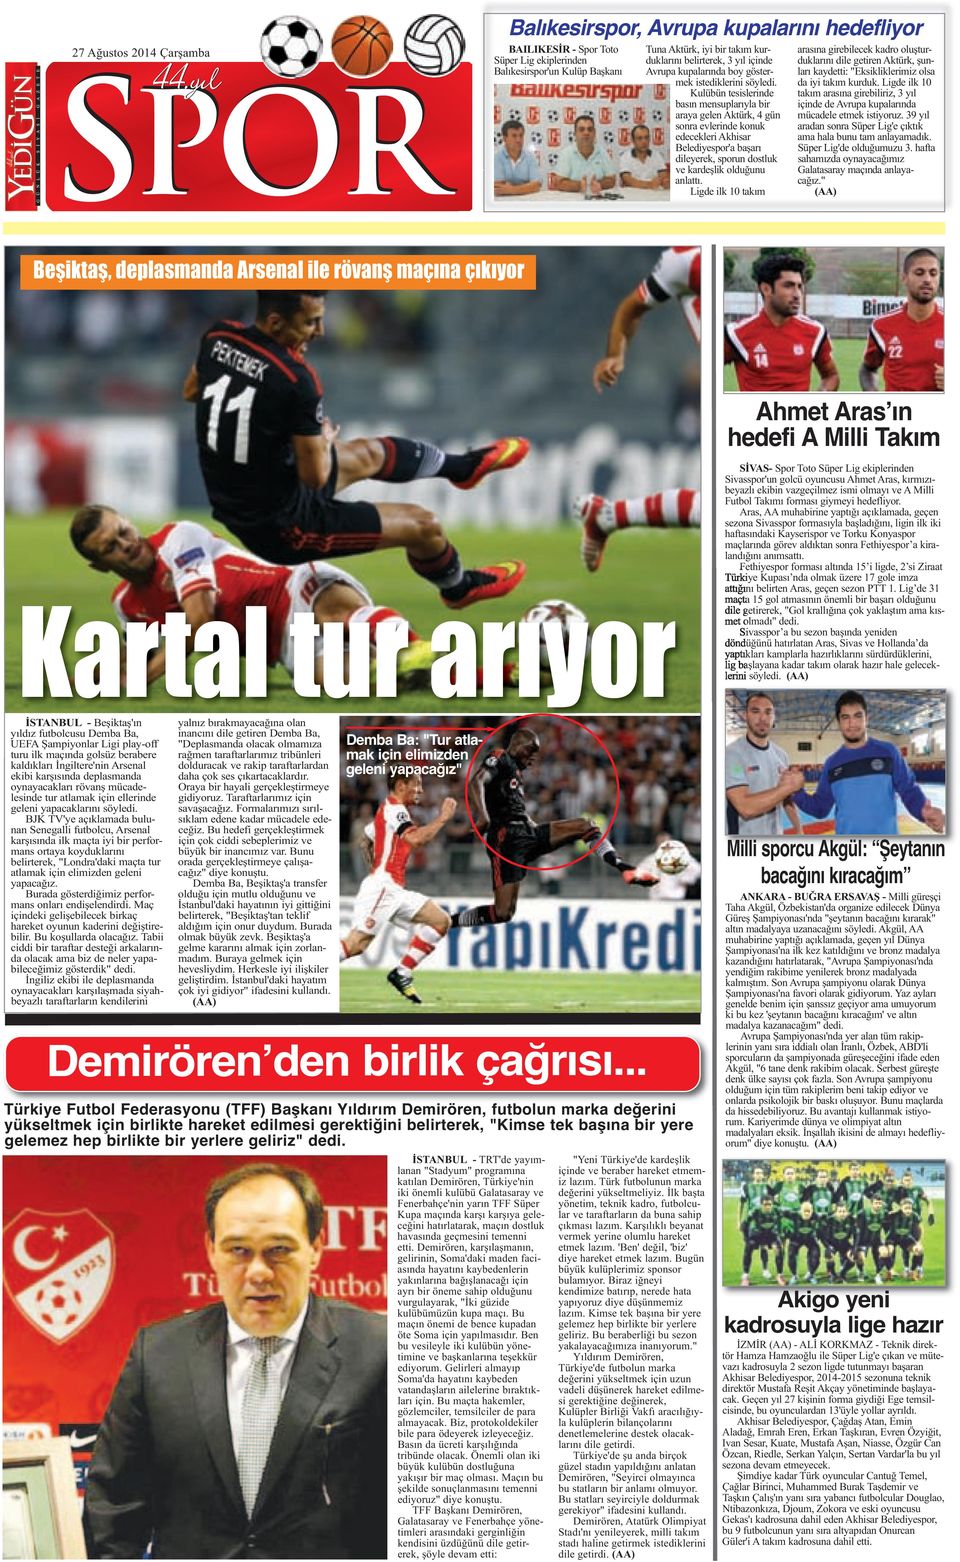 Kulübün tesislerinde basın mensuplarıyla bir araya gelen Aktürk, 4 gün sonra evlerinde konuk edecekleri Akhisar Belediyespor'a başarı dileyerek, sporun dostluk ve kardeşlik olduğunu anlattı.